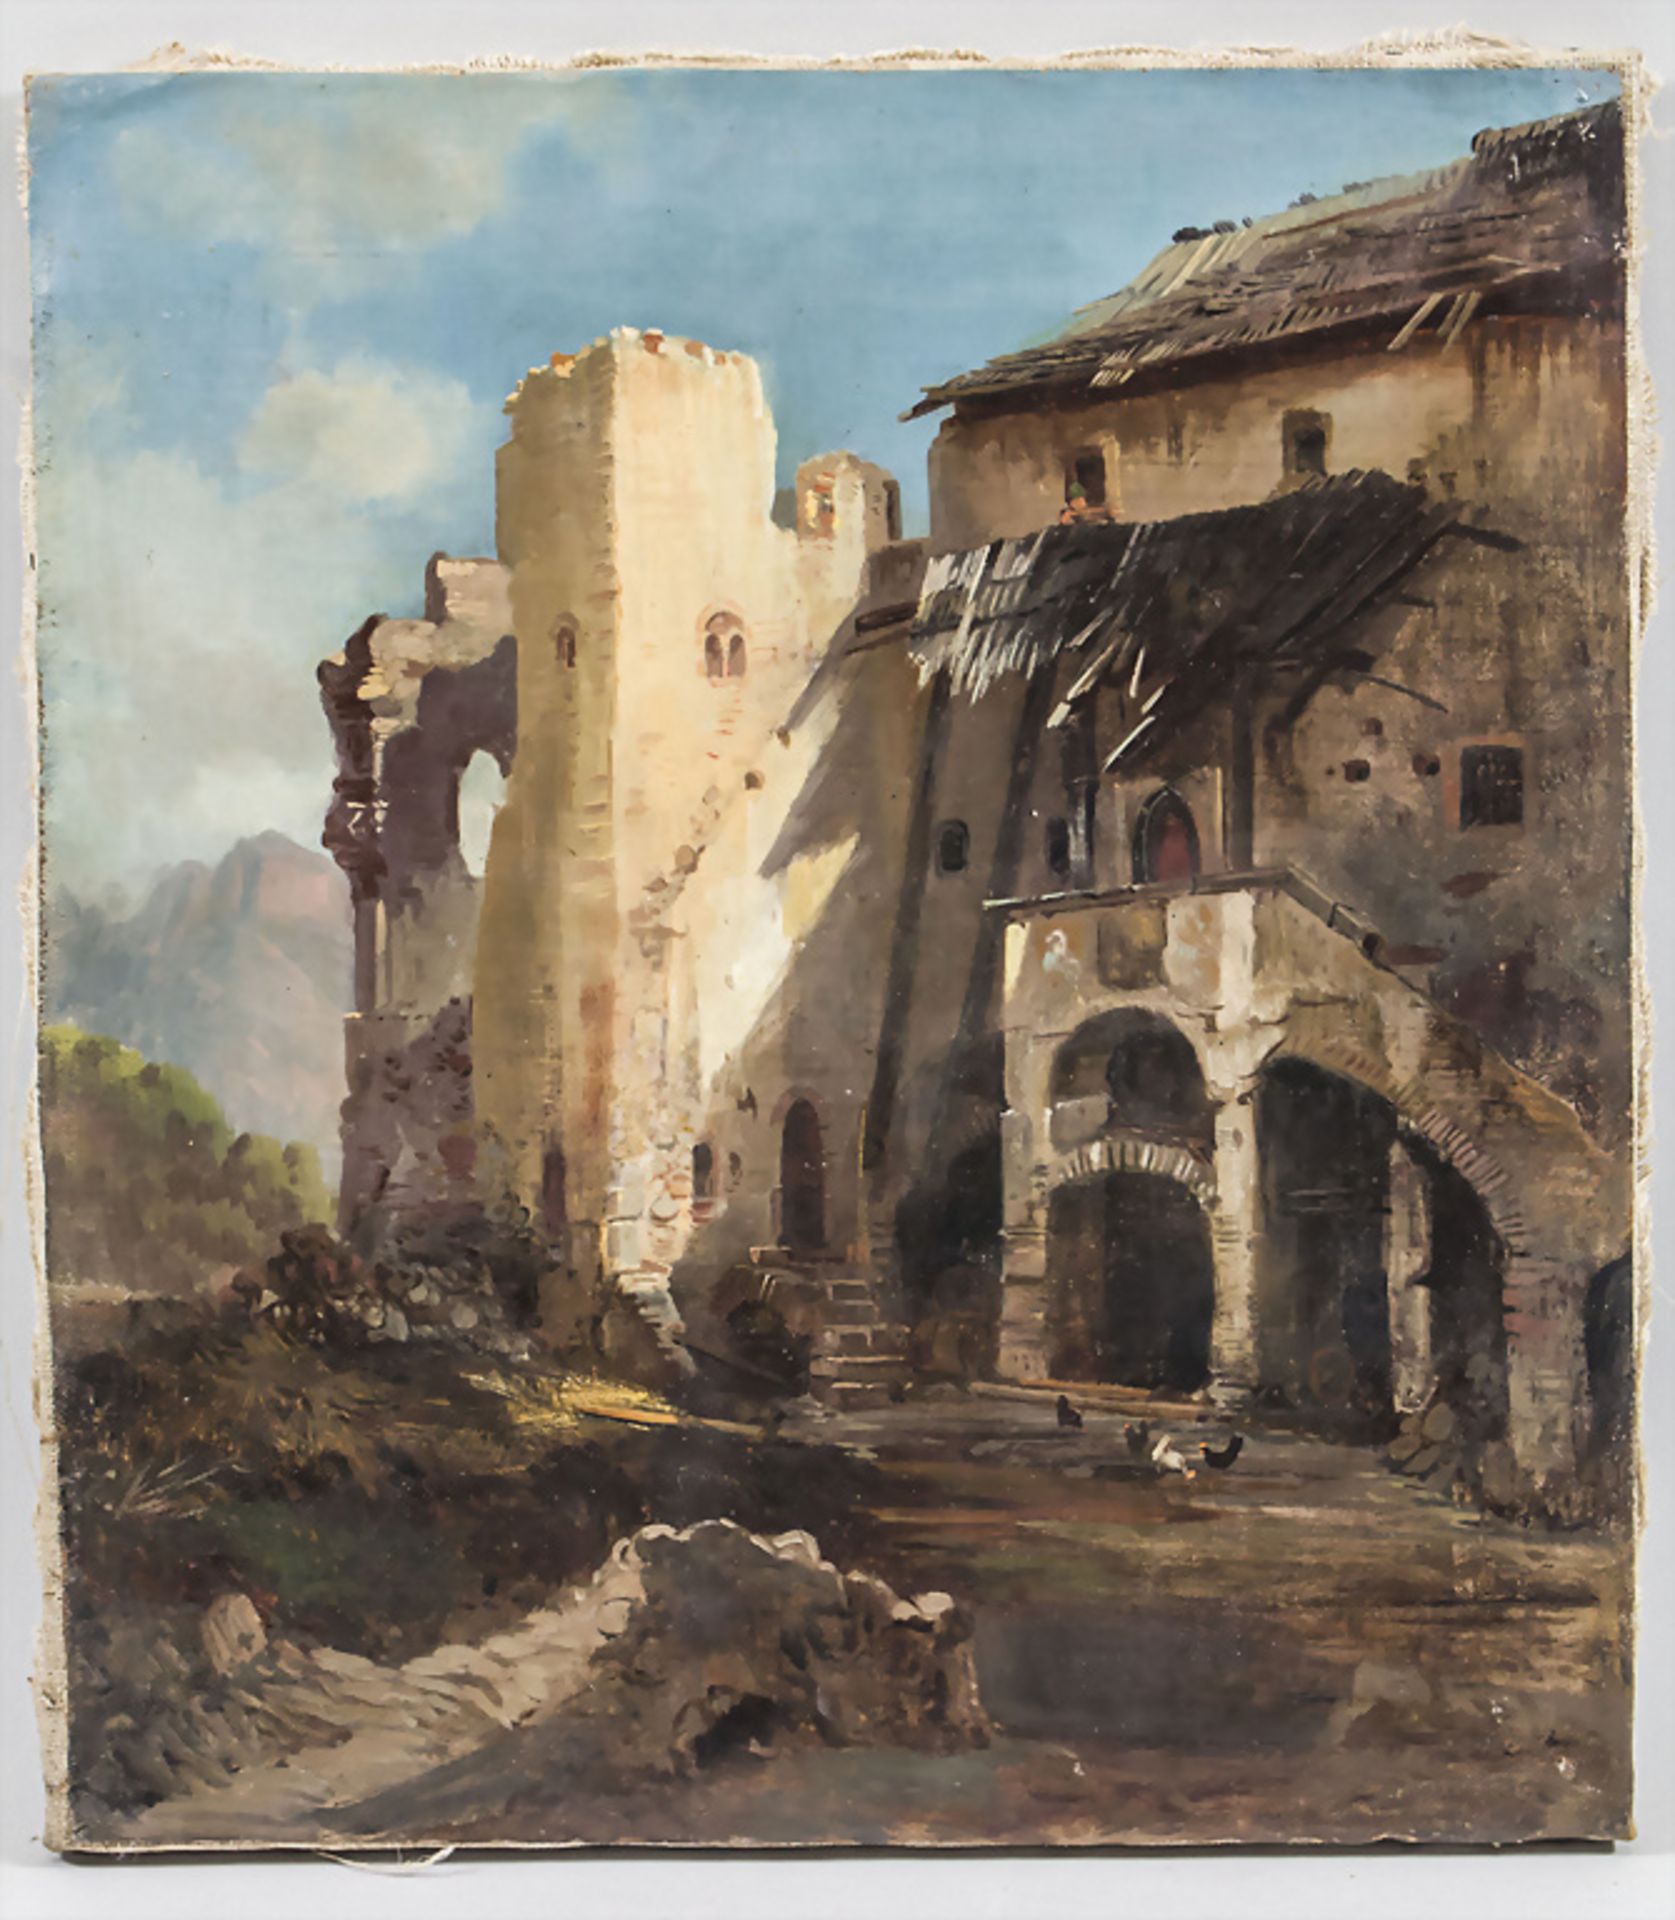 Unbekannter Künstler des 18./19. Jh., 'Ruine einer Klosteranlage' / 'Ruins of a monastery' - Bild 2 aus 3